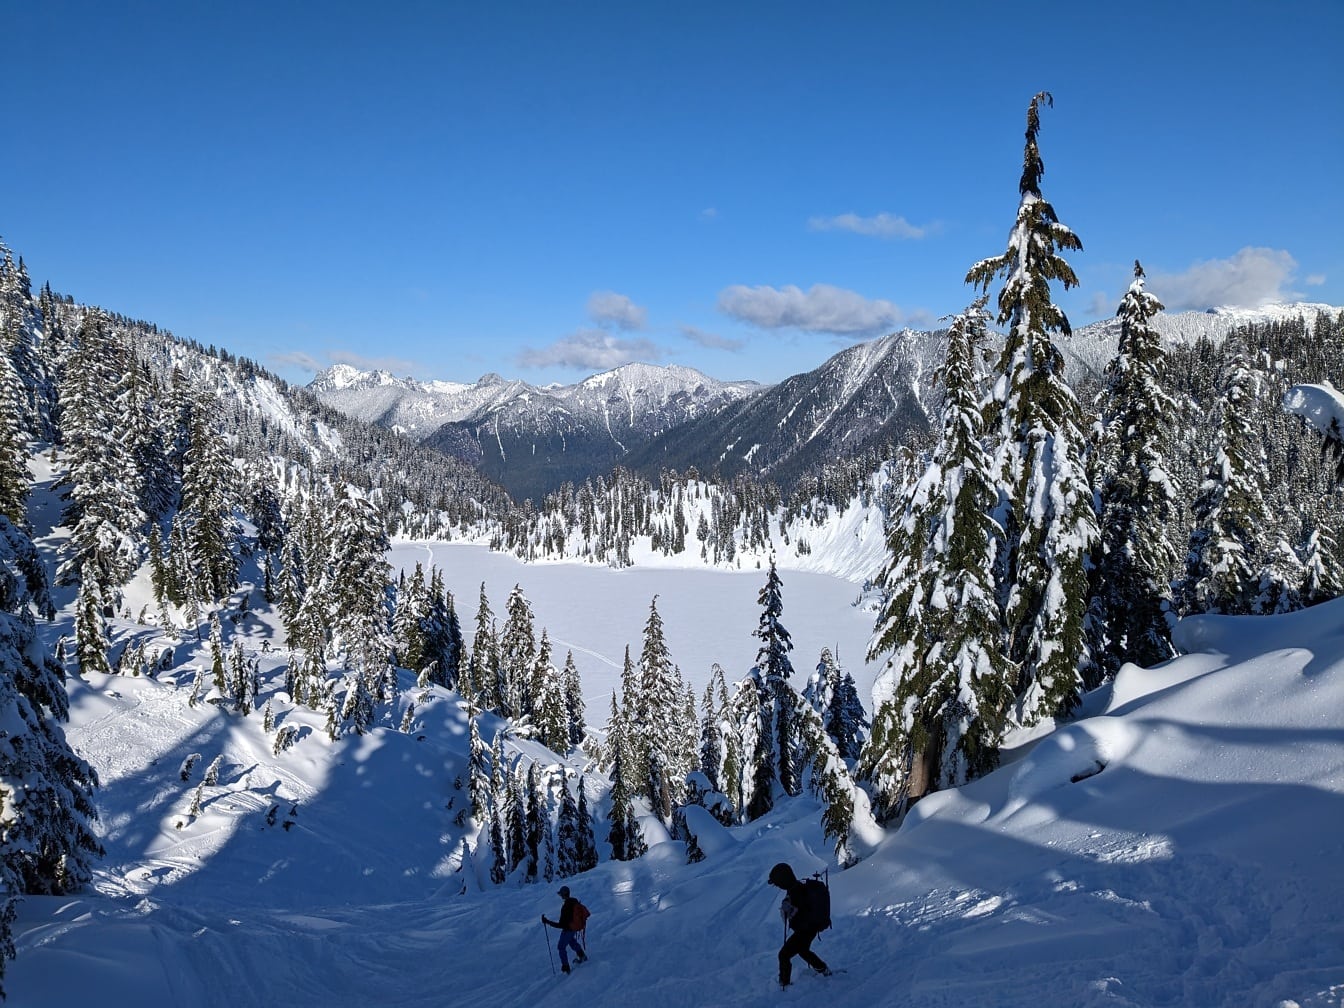 Sciatori sul pendio innevato della montagna nell’avventura invernale escursionistica